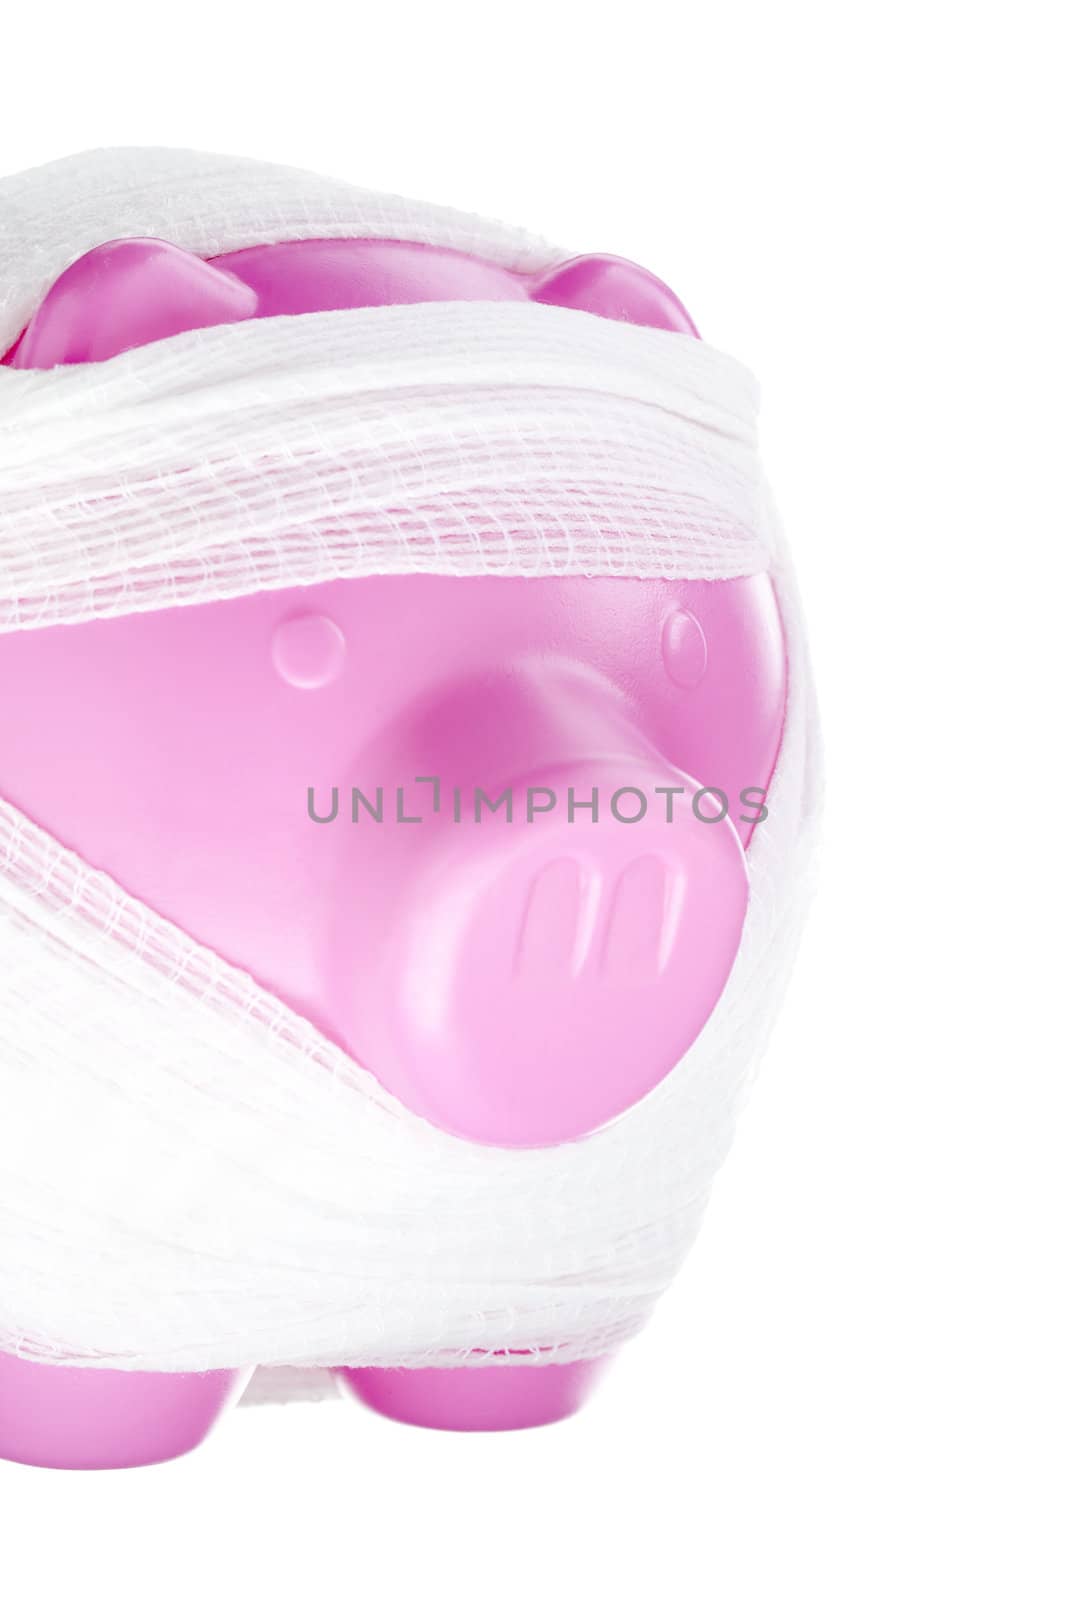 bandaged piggy bank by kozzi